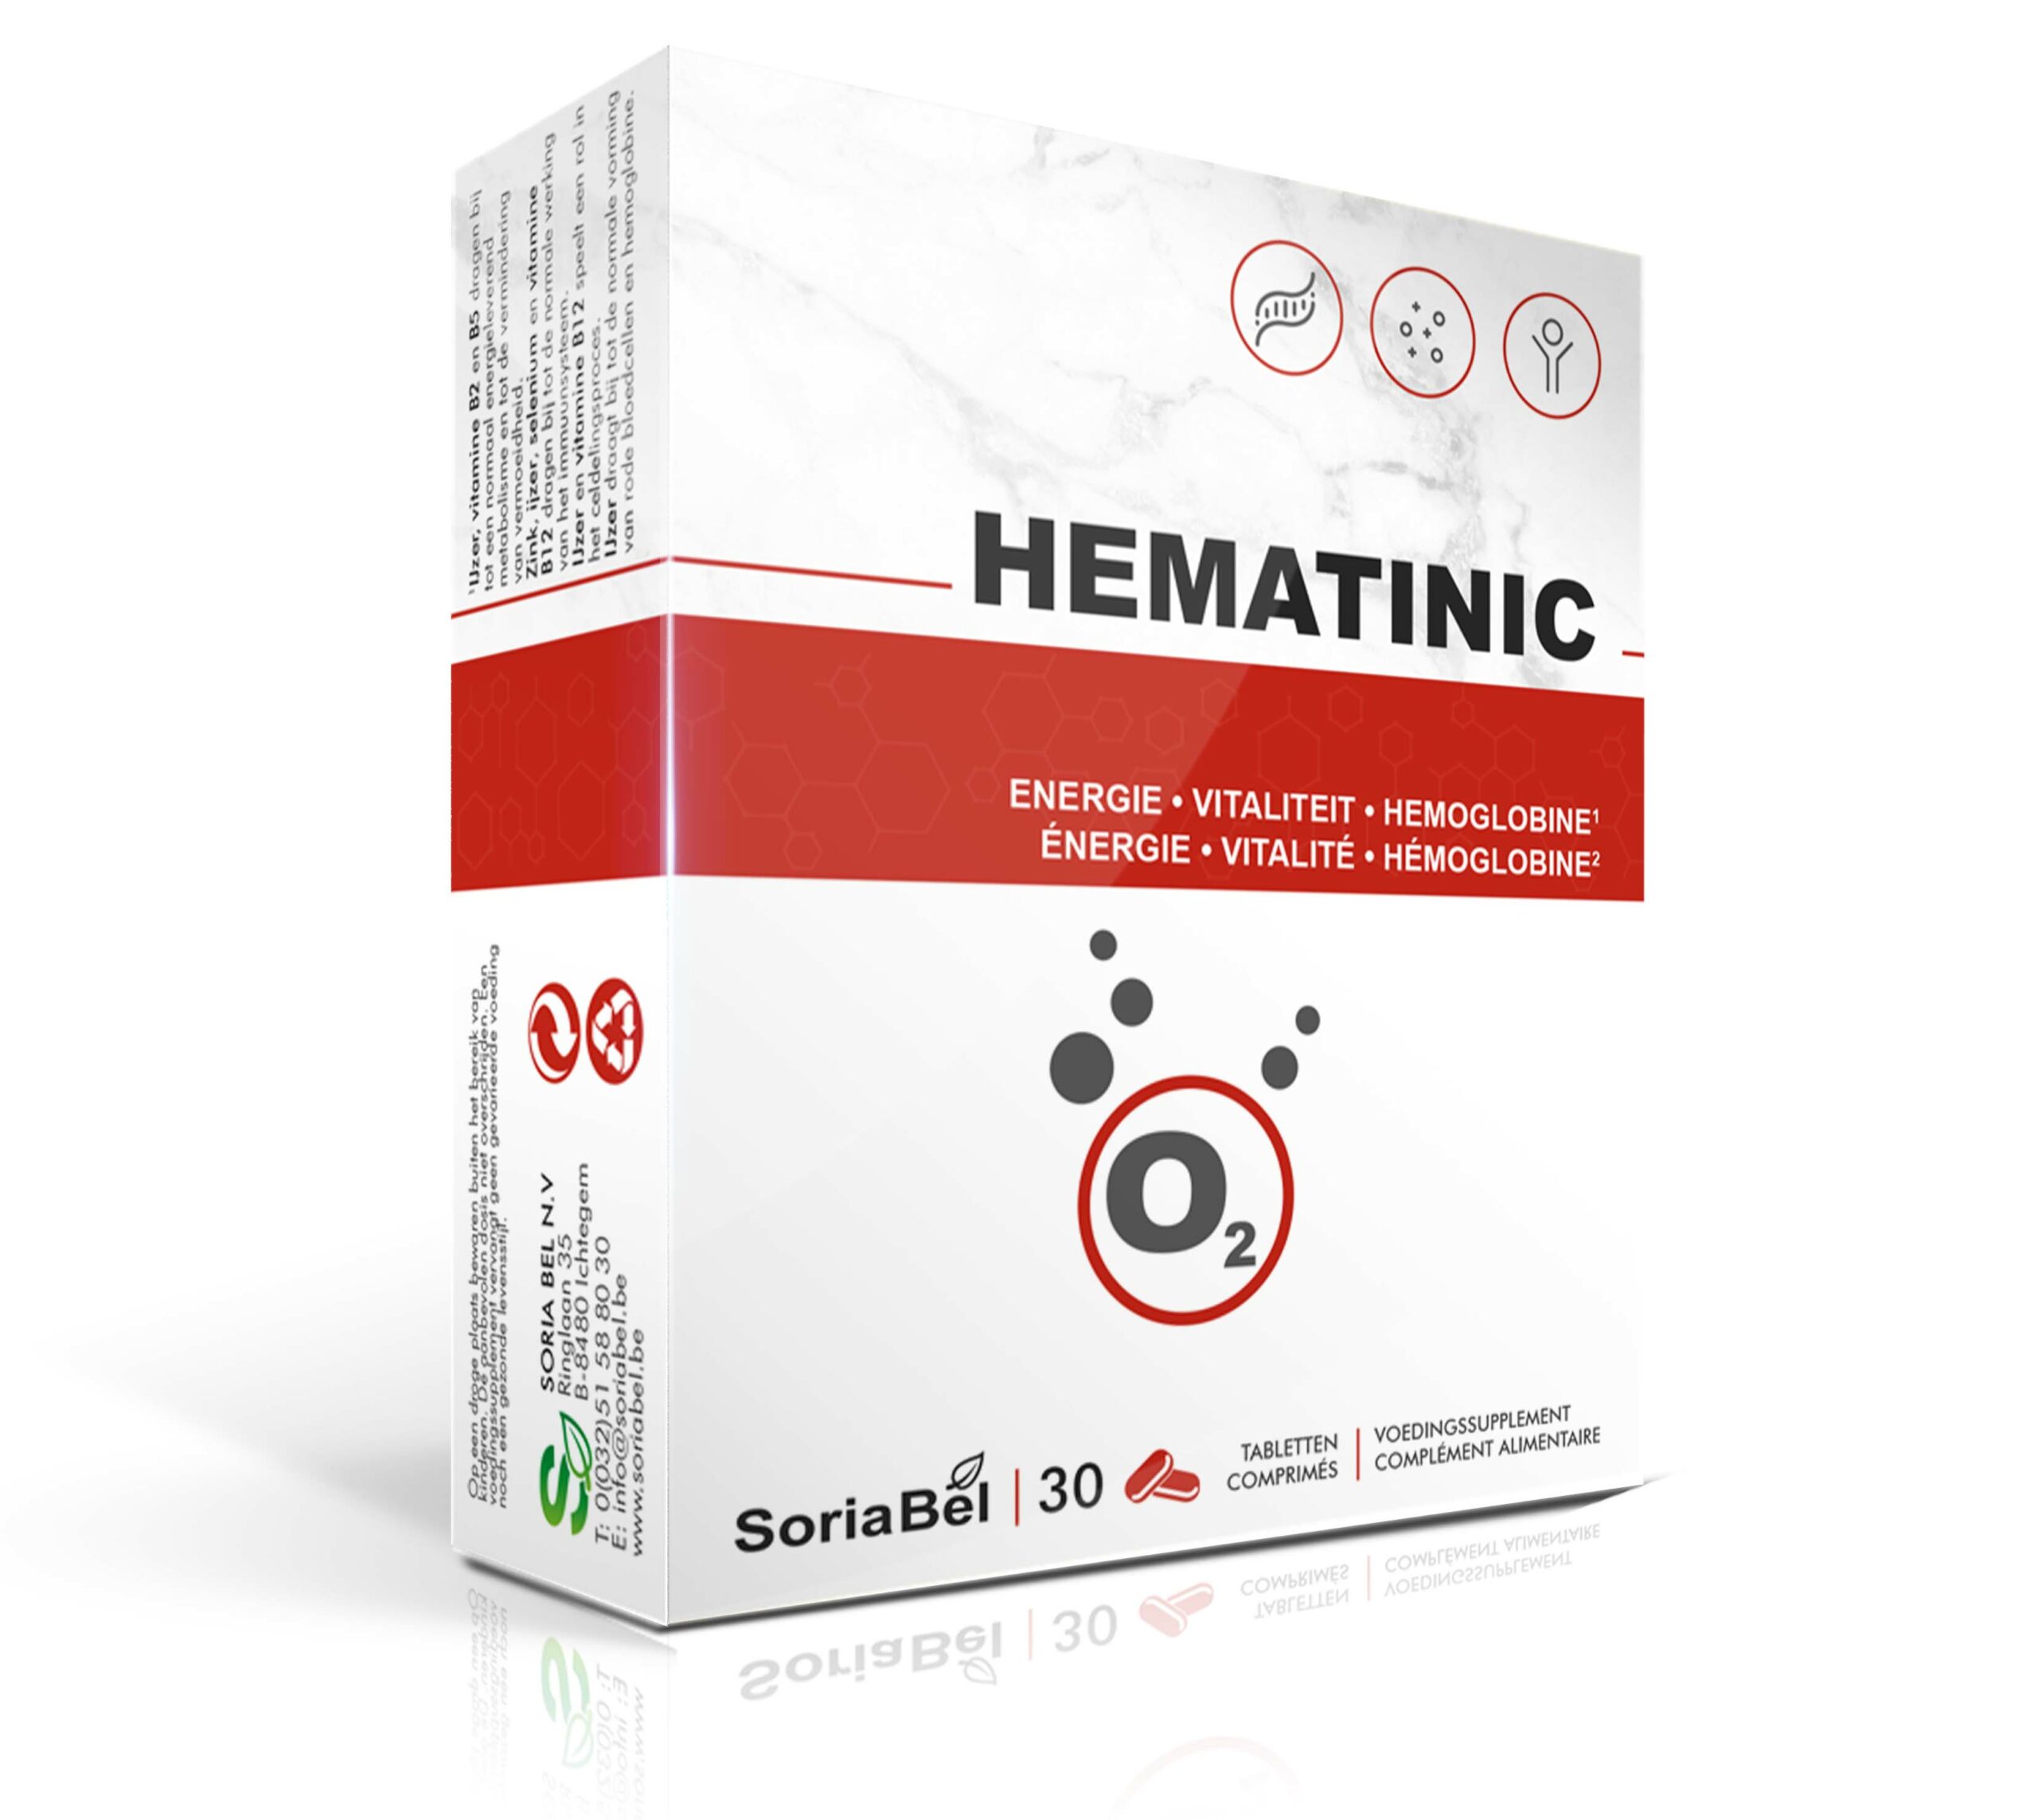 Hematinic